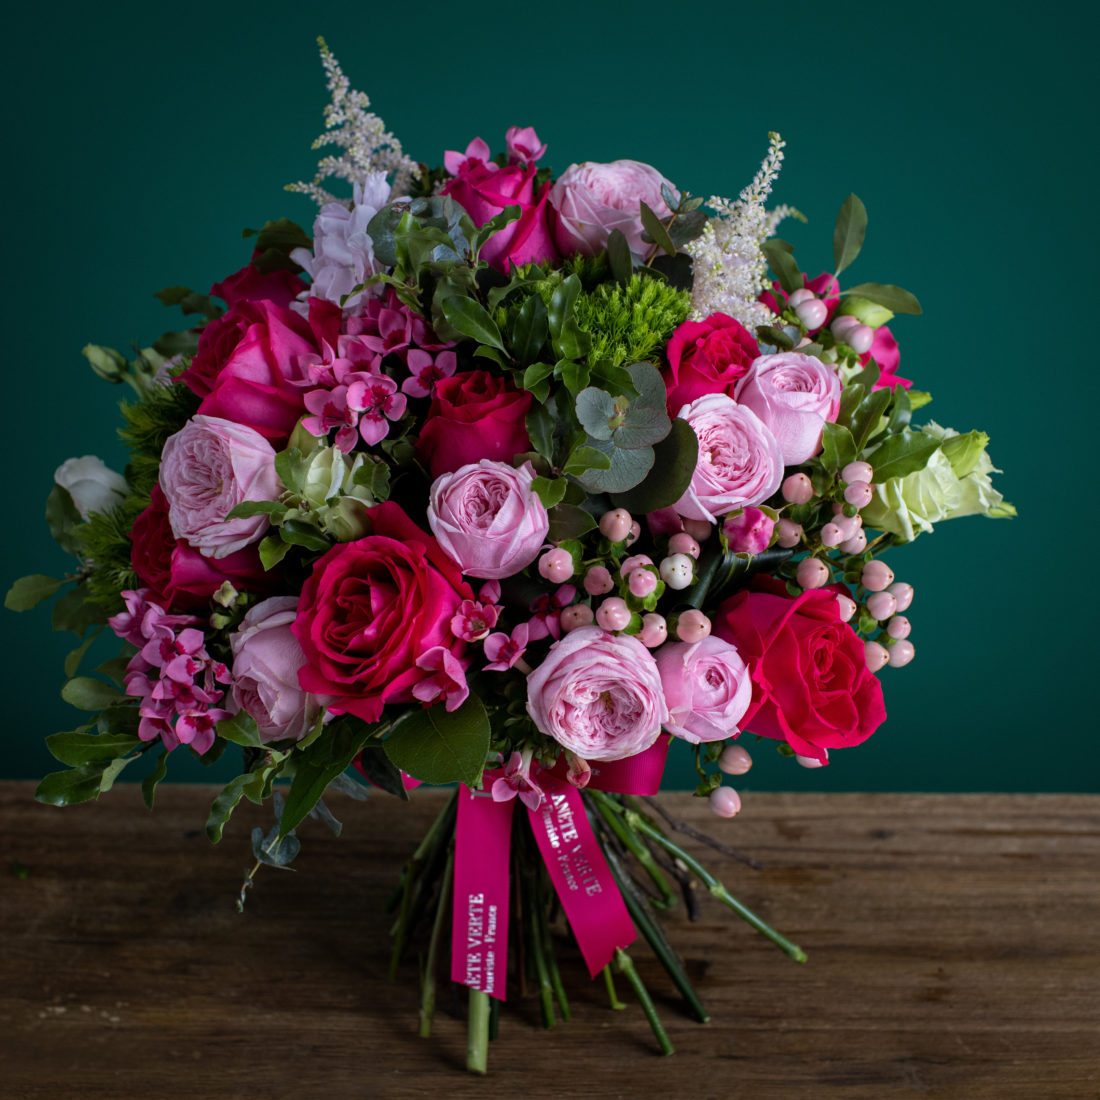 L'amour de Paris | Florist Delivery Hong Kong | Buy Flowers Online